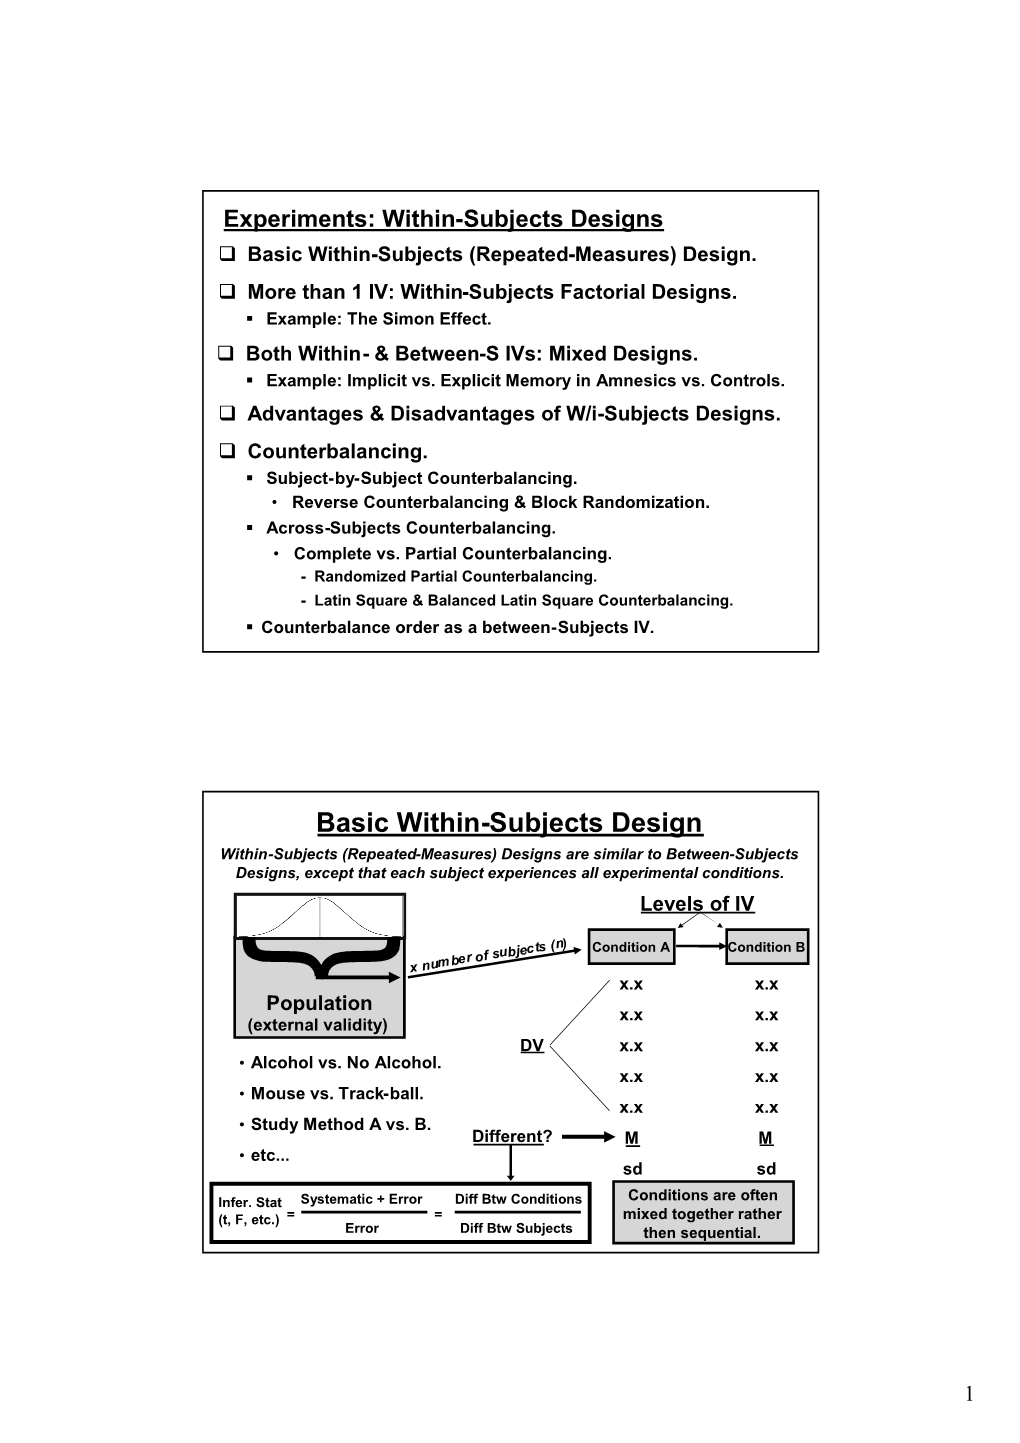 Basic Within-Subjects Design